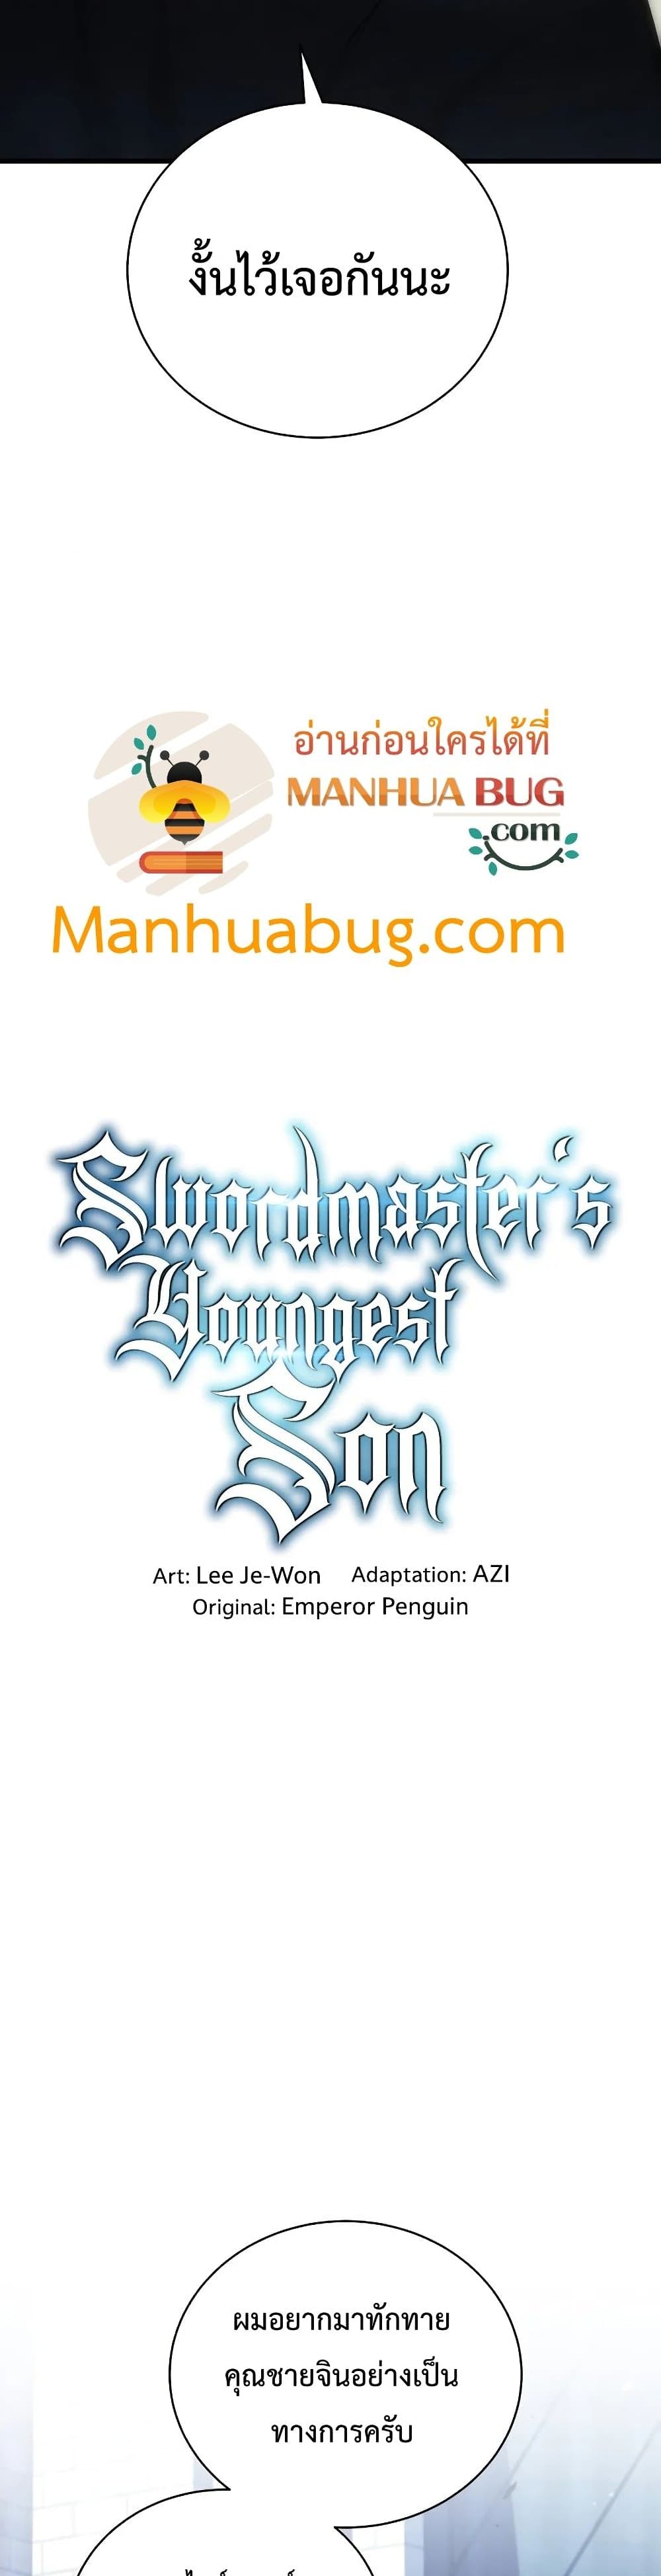 Swordmaster’s Youngest Son 29-29